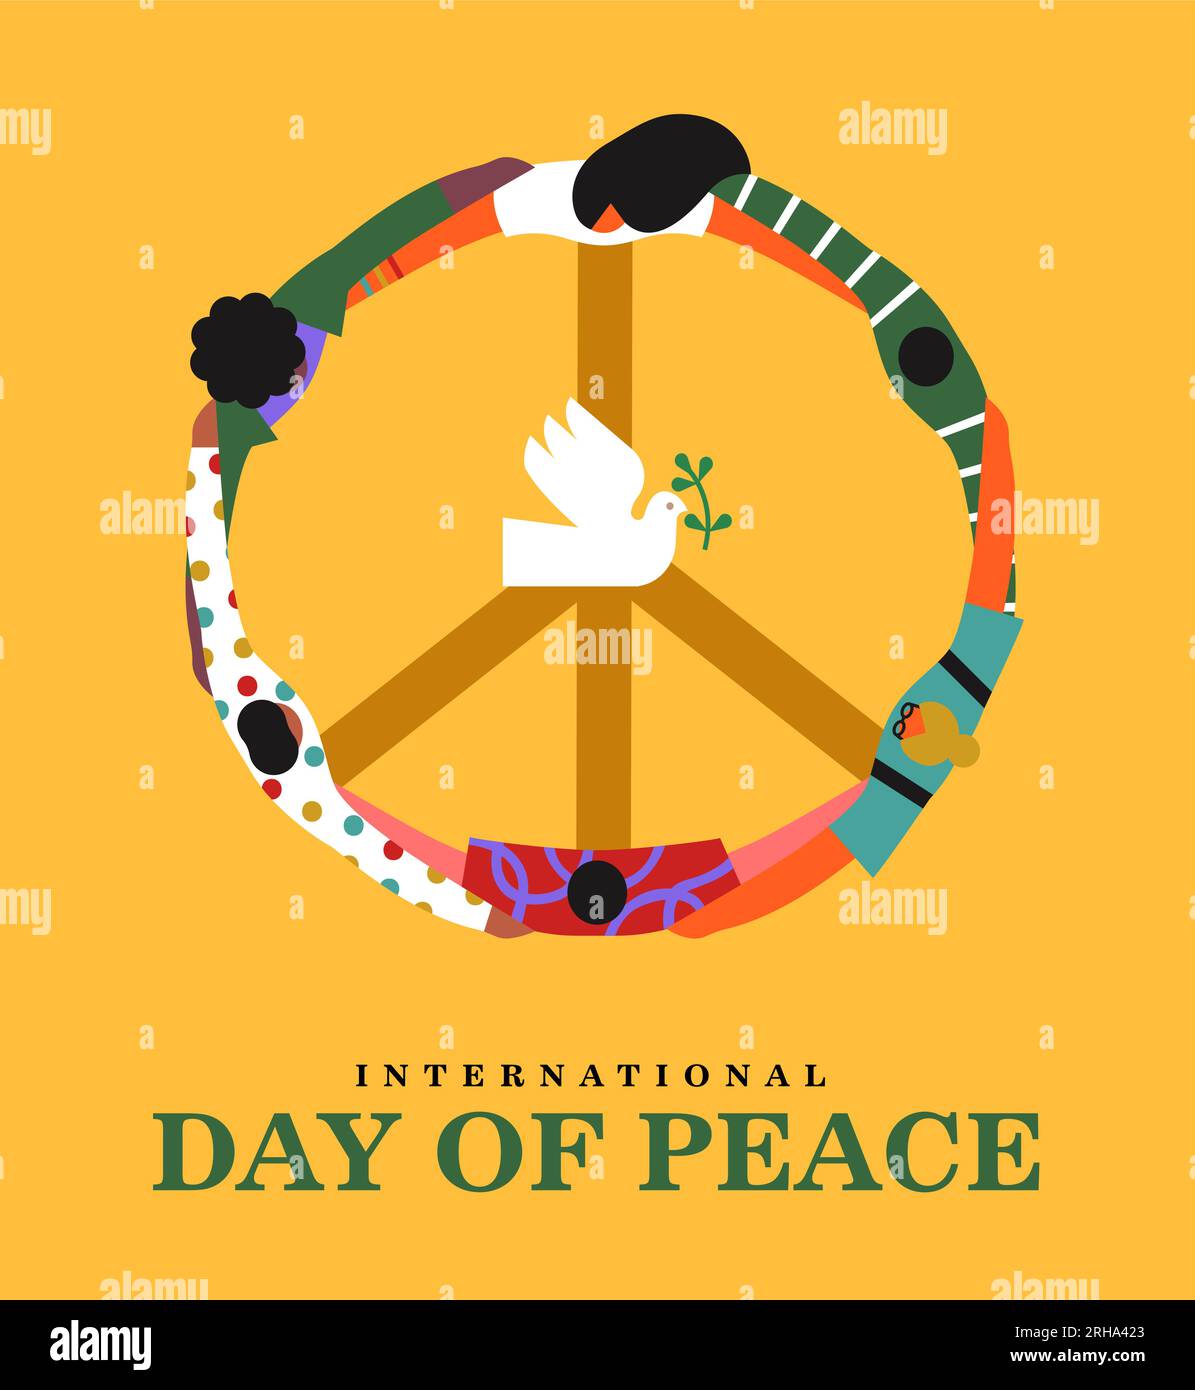 Illustrazione del banner della giornata internazionale della pace. La gente si abbraccia in un cerchio creando la forma del simbolo della pace e la colomba bianca con oli Illustrazione Vettoriale